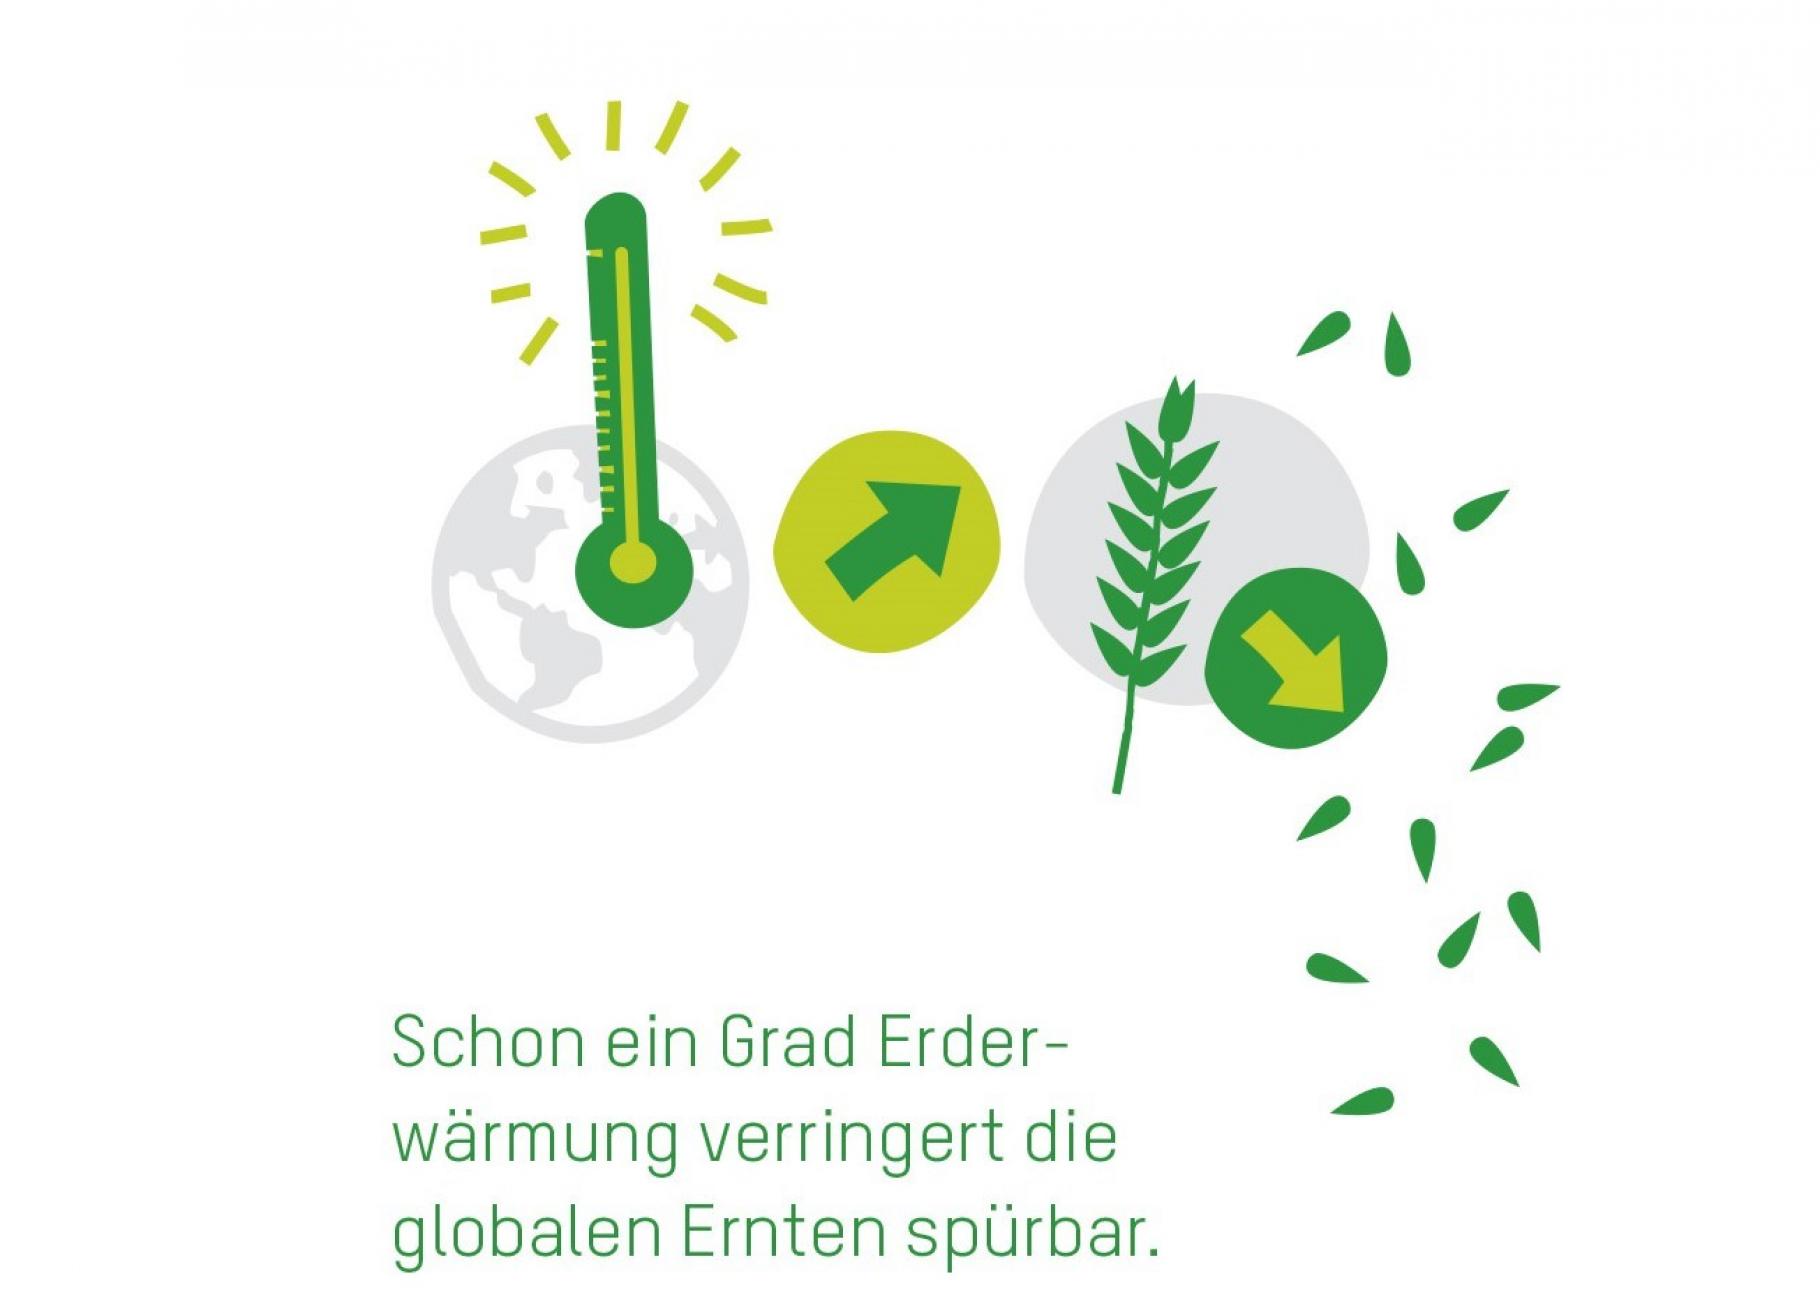 Grafik mit grünen Icons (Thermometer, Pfeile, Getreide) vor grauer Erdkugel